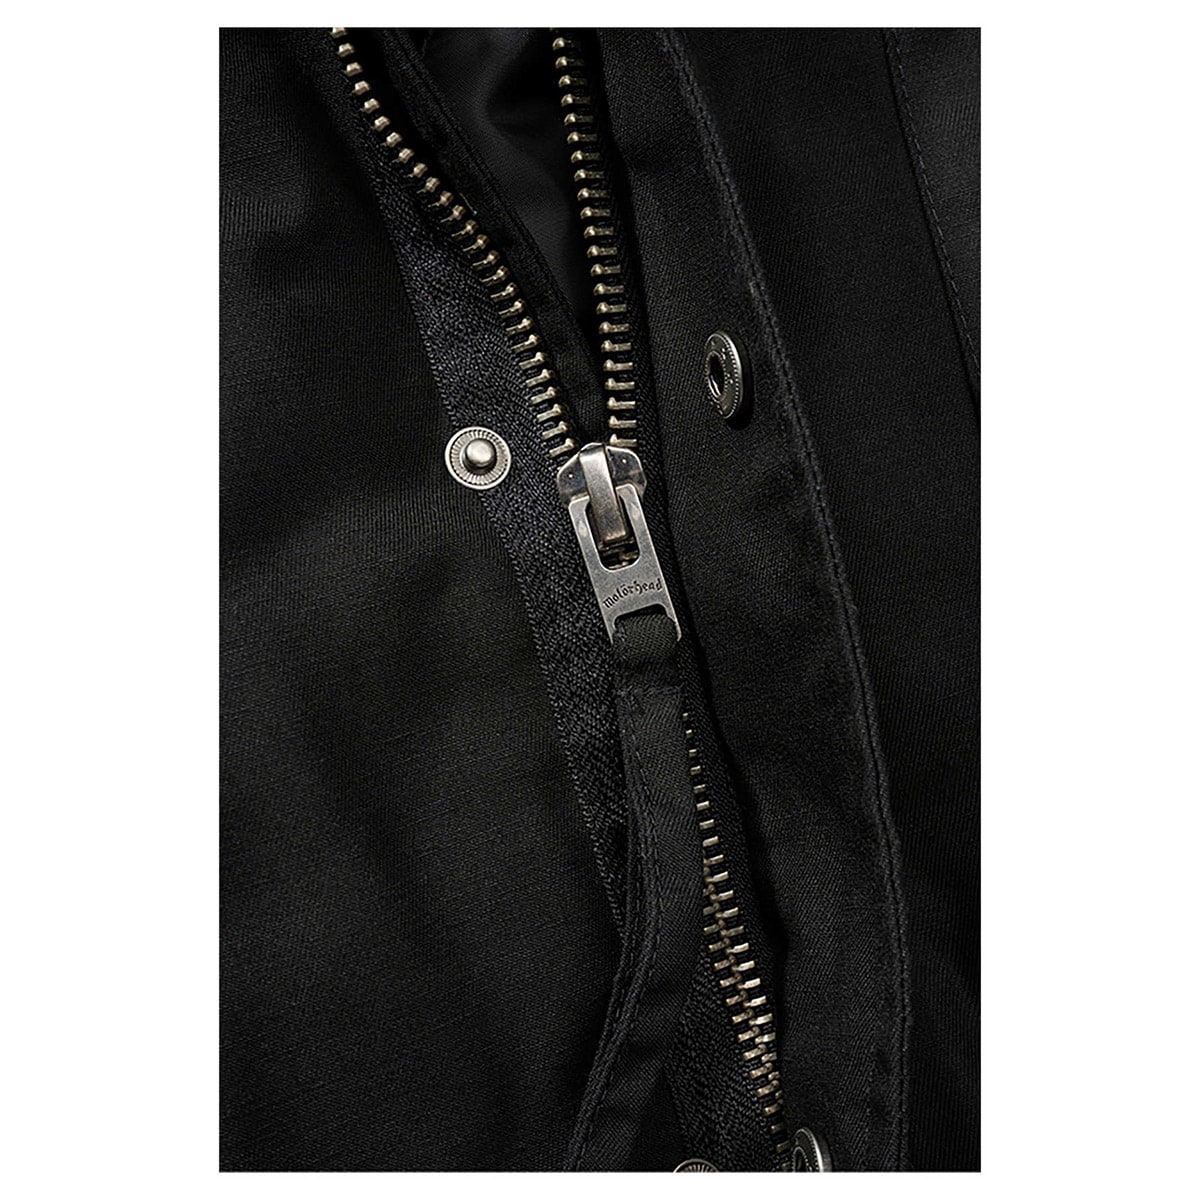 Куртка Brandit M65 Classic Motorhead Black